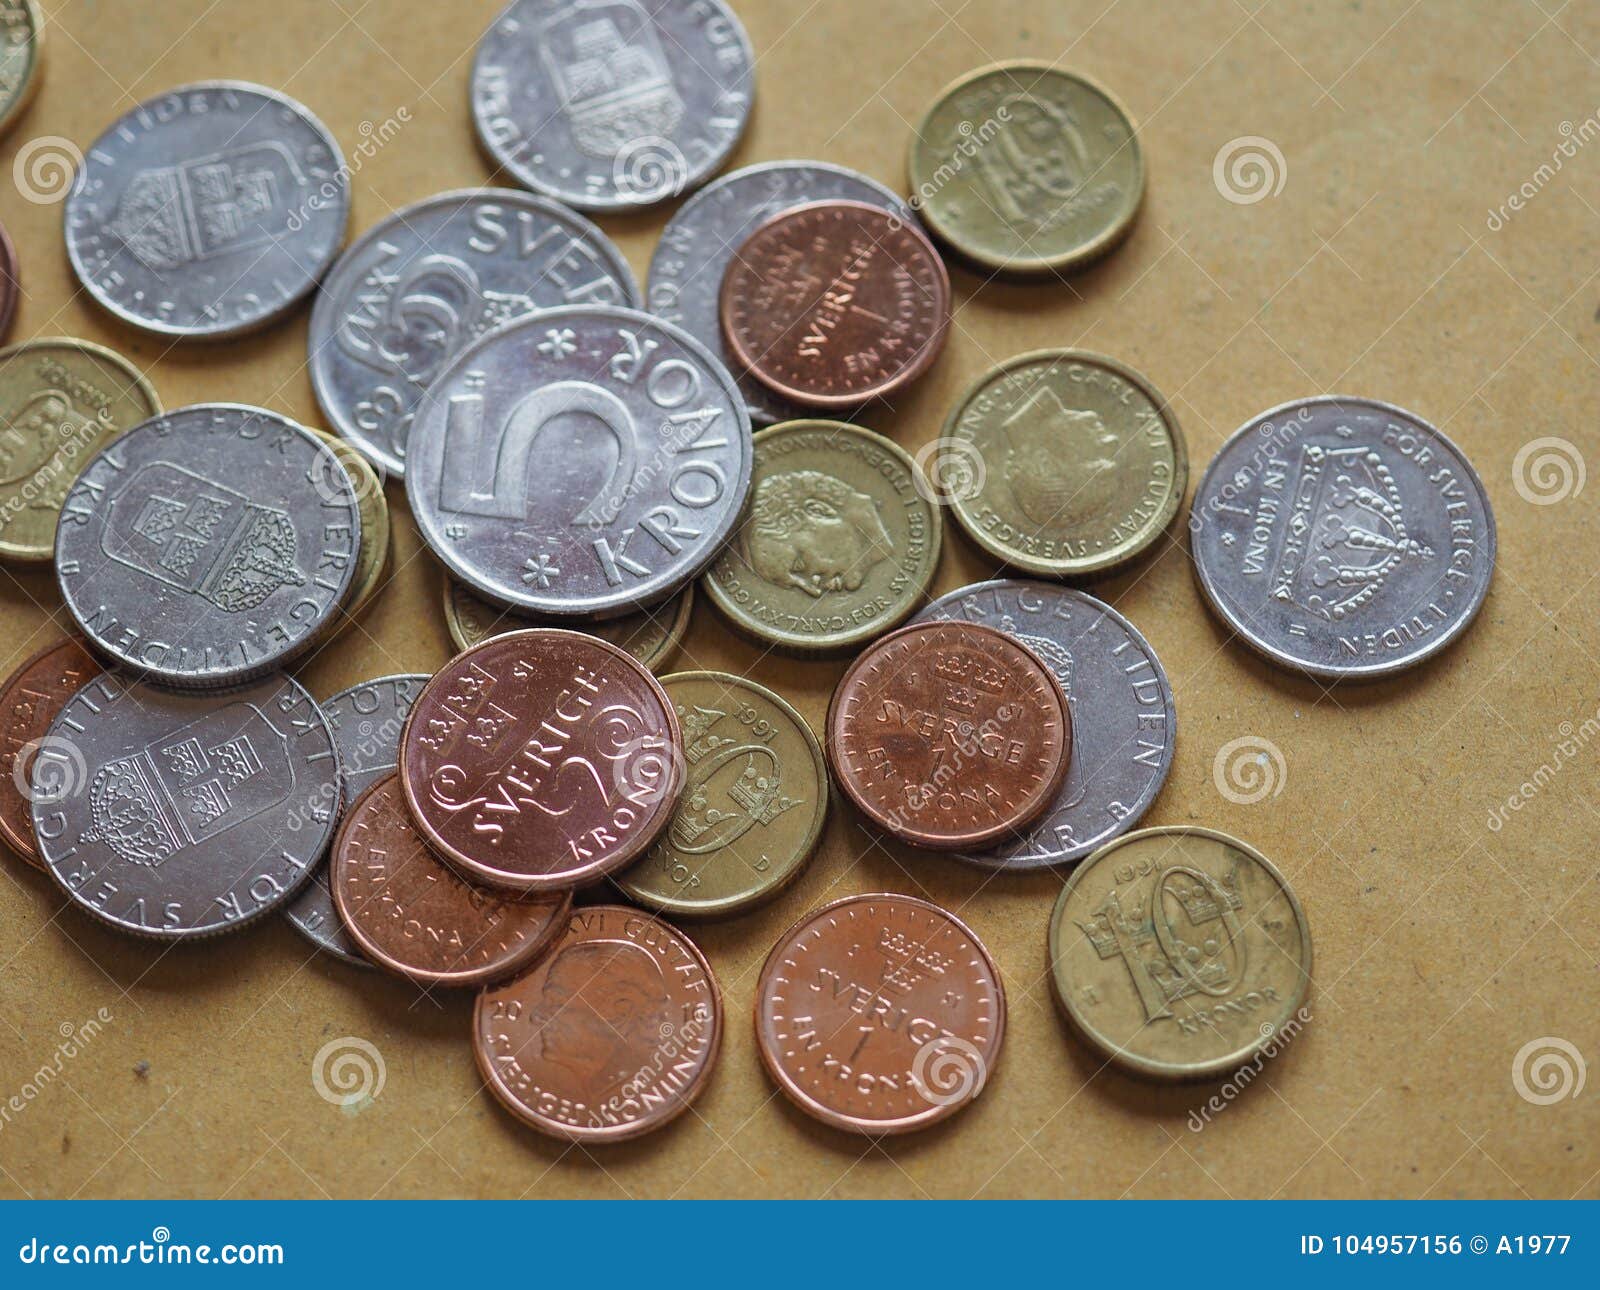 瑞典的硬币 库存图片. 图片 包括有 造币, 收集, 状态, 纹章学, 当前, 对象, 旅行, 瑞典语, 符号 - 43962107